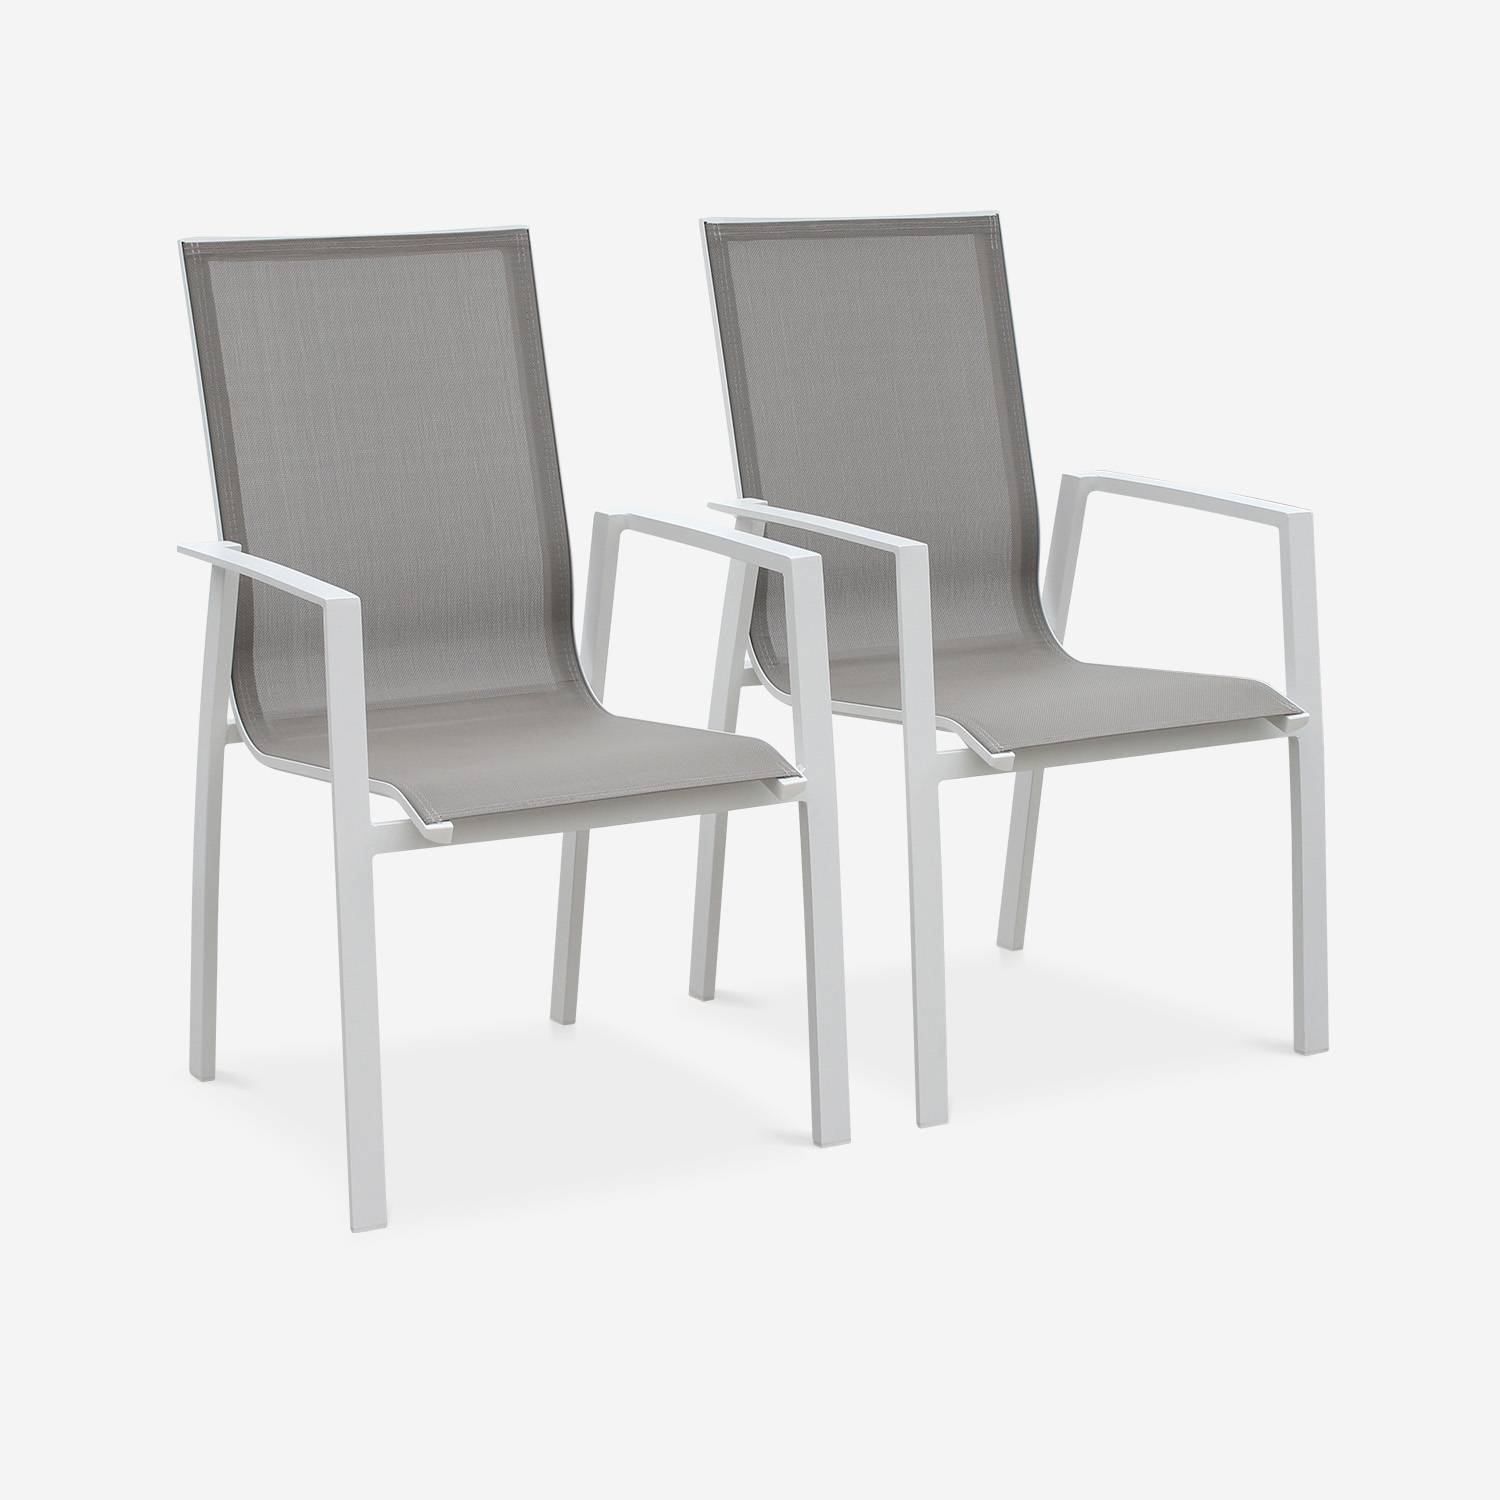 Coppia di sedie Washington Bianco/ Marrone Talpa in alluminio bianco e textilene colore marrone talpa, impilabili Photo1